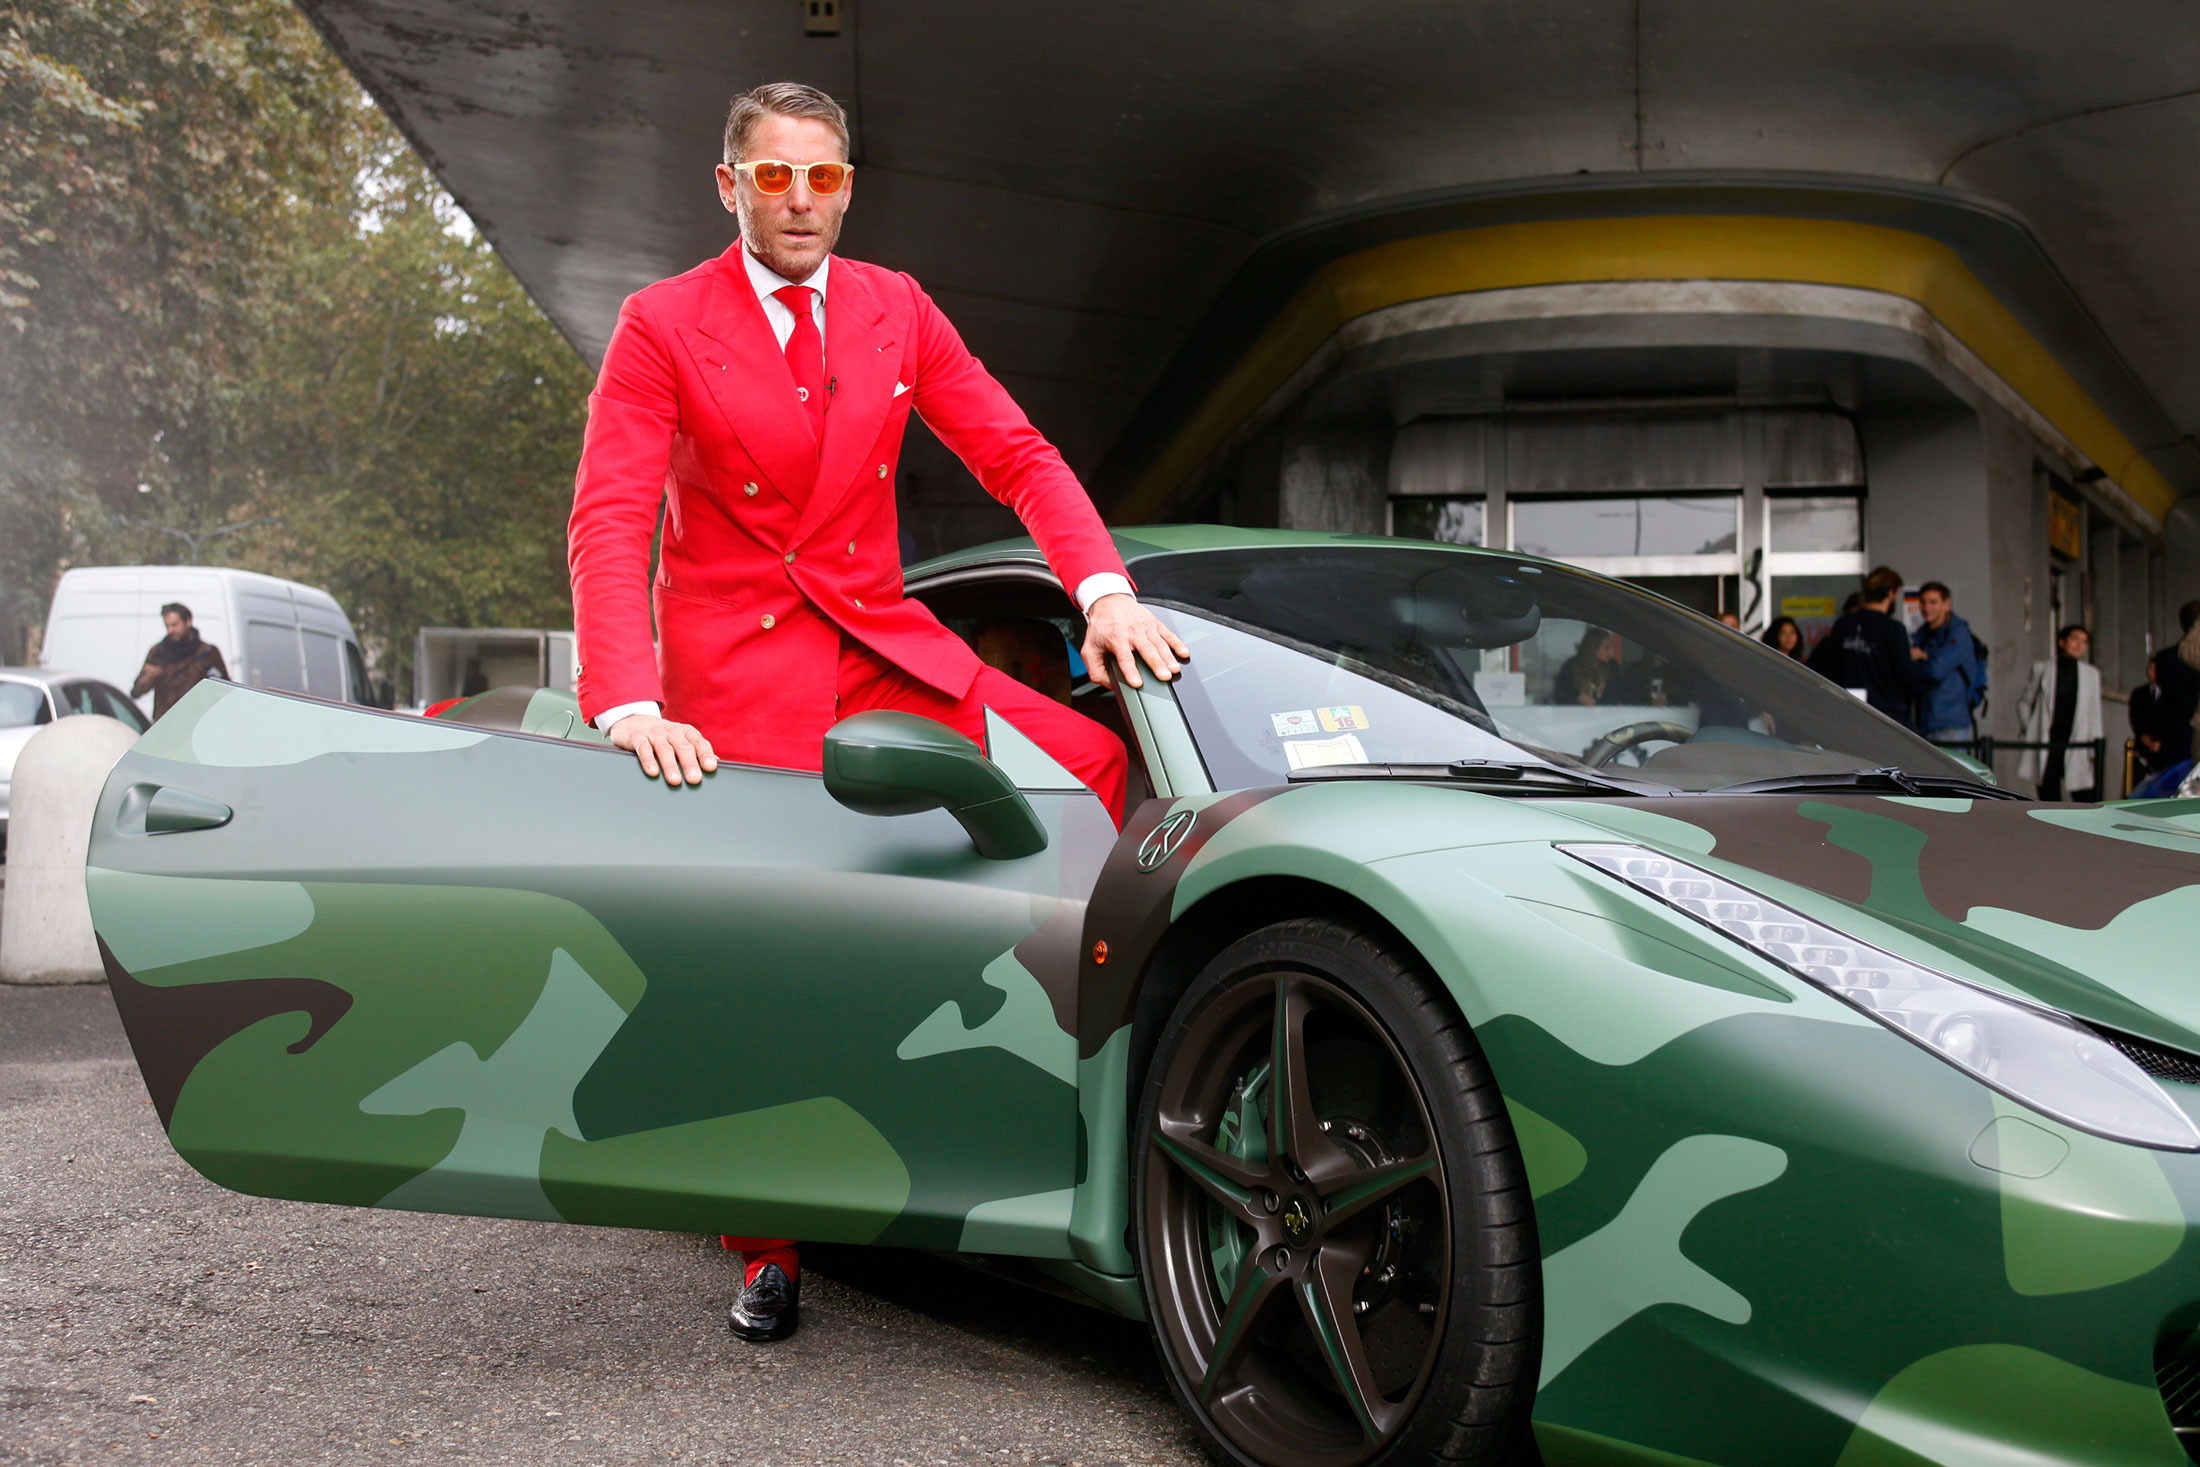 
Lapo Elkann, doanh nhân người Ý kiêm cháu trai của Gianni Agnelli, cựu CEO cũng như cổ đông điều hành hãng Fiat, đã gây xôn xao khi tặng chiếc siêu xe Ferrari 458 Italia màu rằn ri có một không hai của mình cho tổ chức American Foundation For Aids (amfAR).
